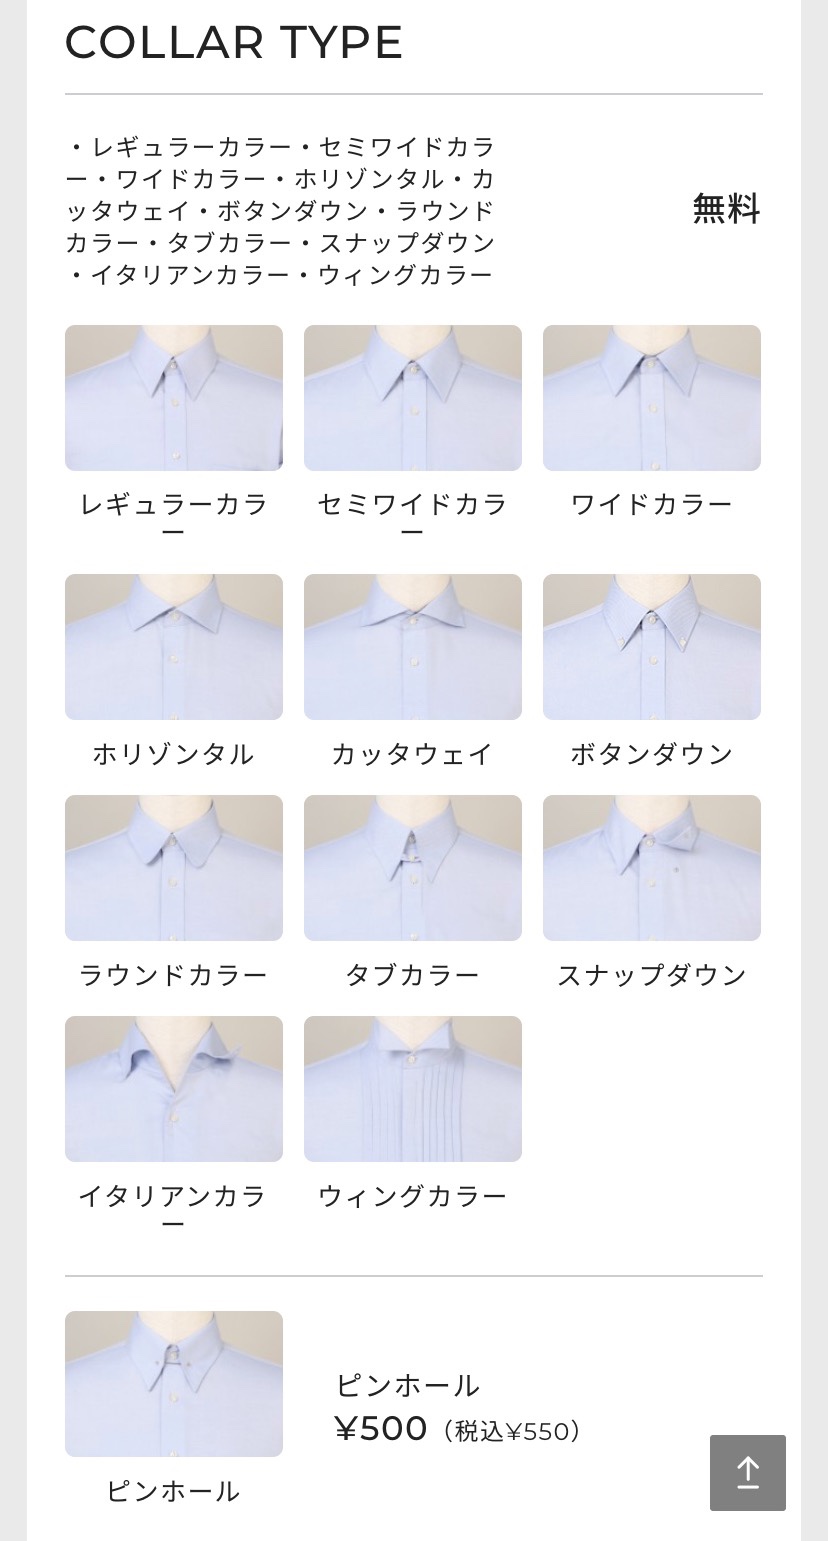 オーダーシャツでは、様々な種類のカラーデザインを選ぶことができる